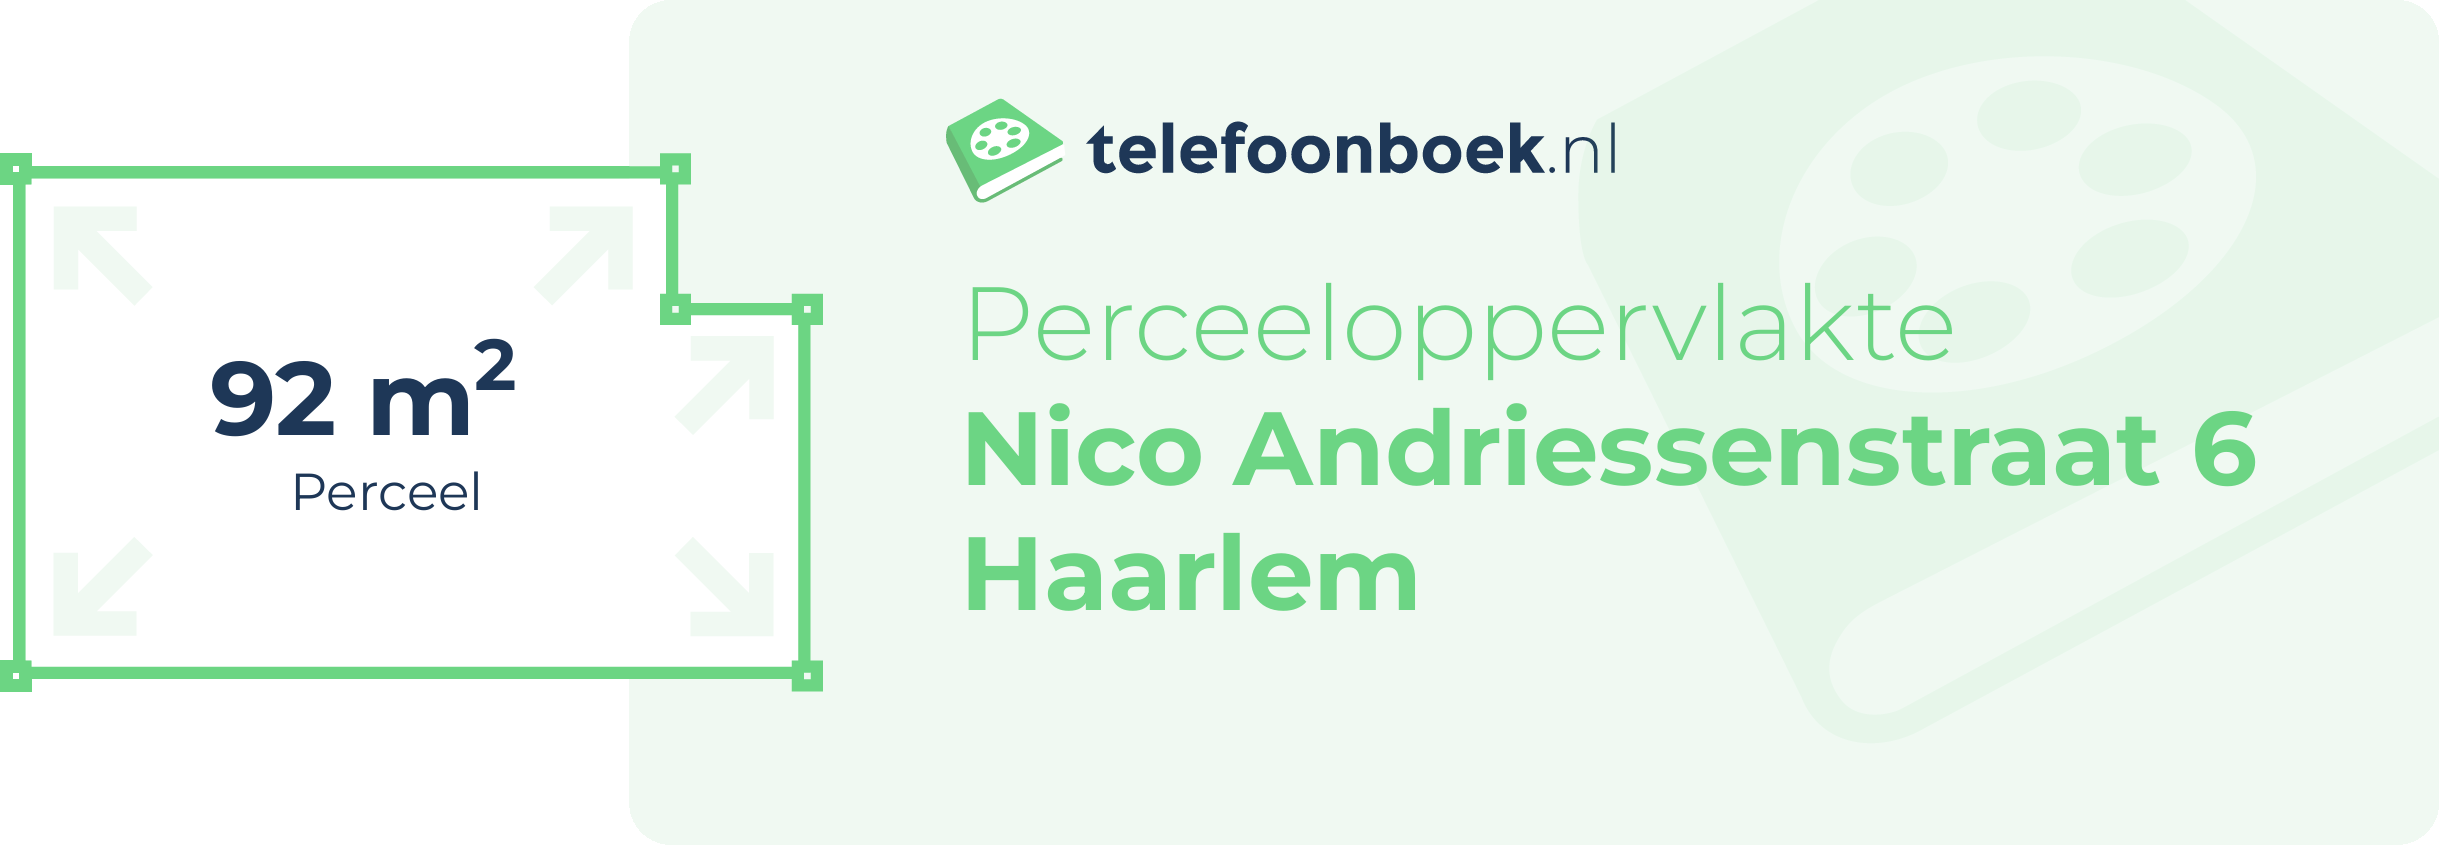 Perceeloppervlakte Nico Andriessenstraat 6 Haarlem